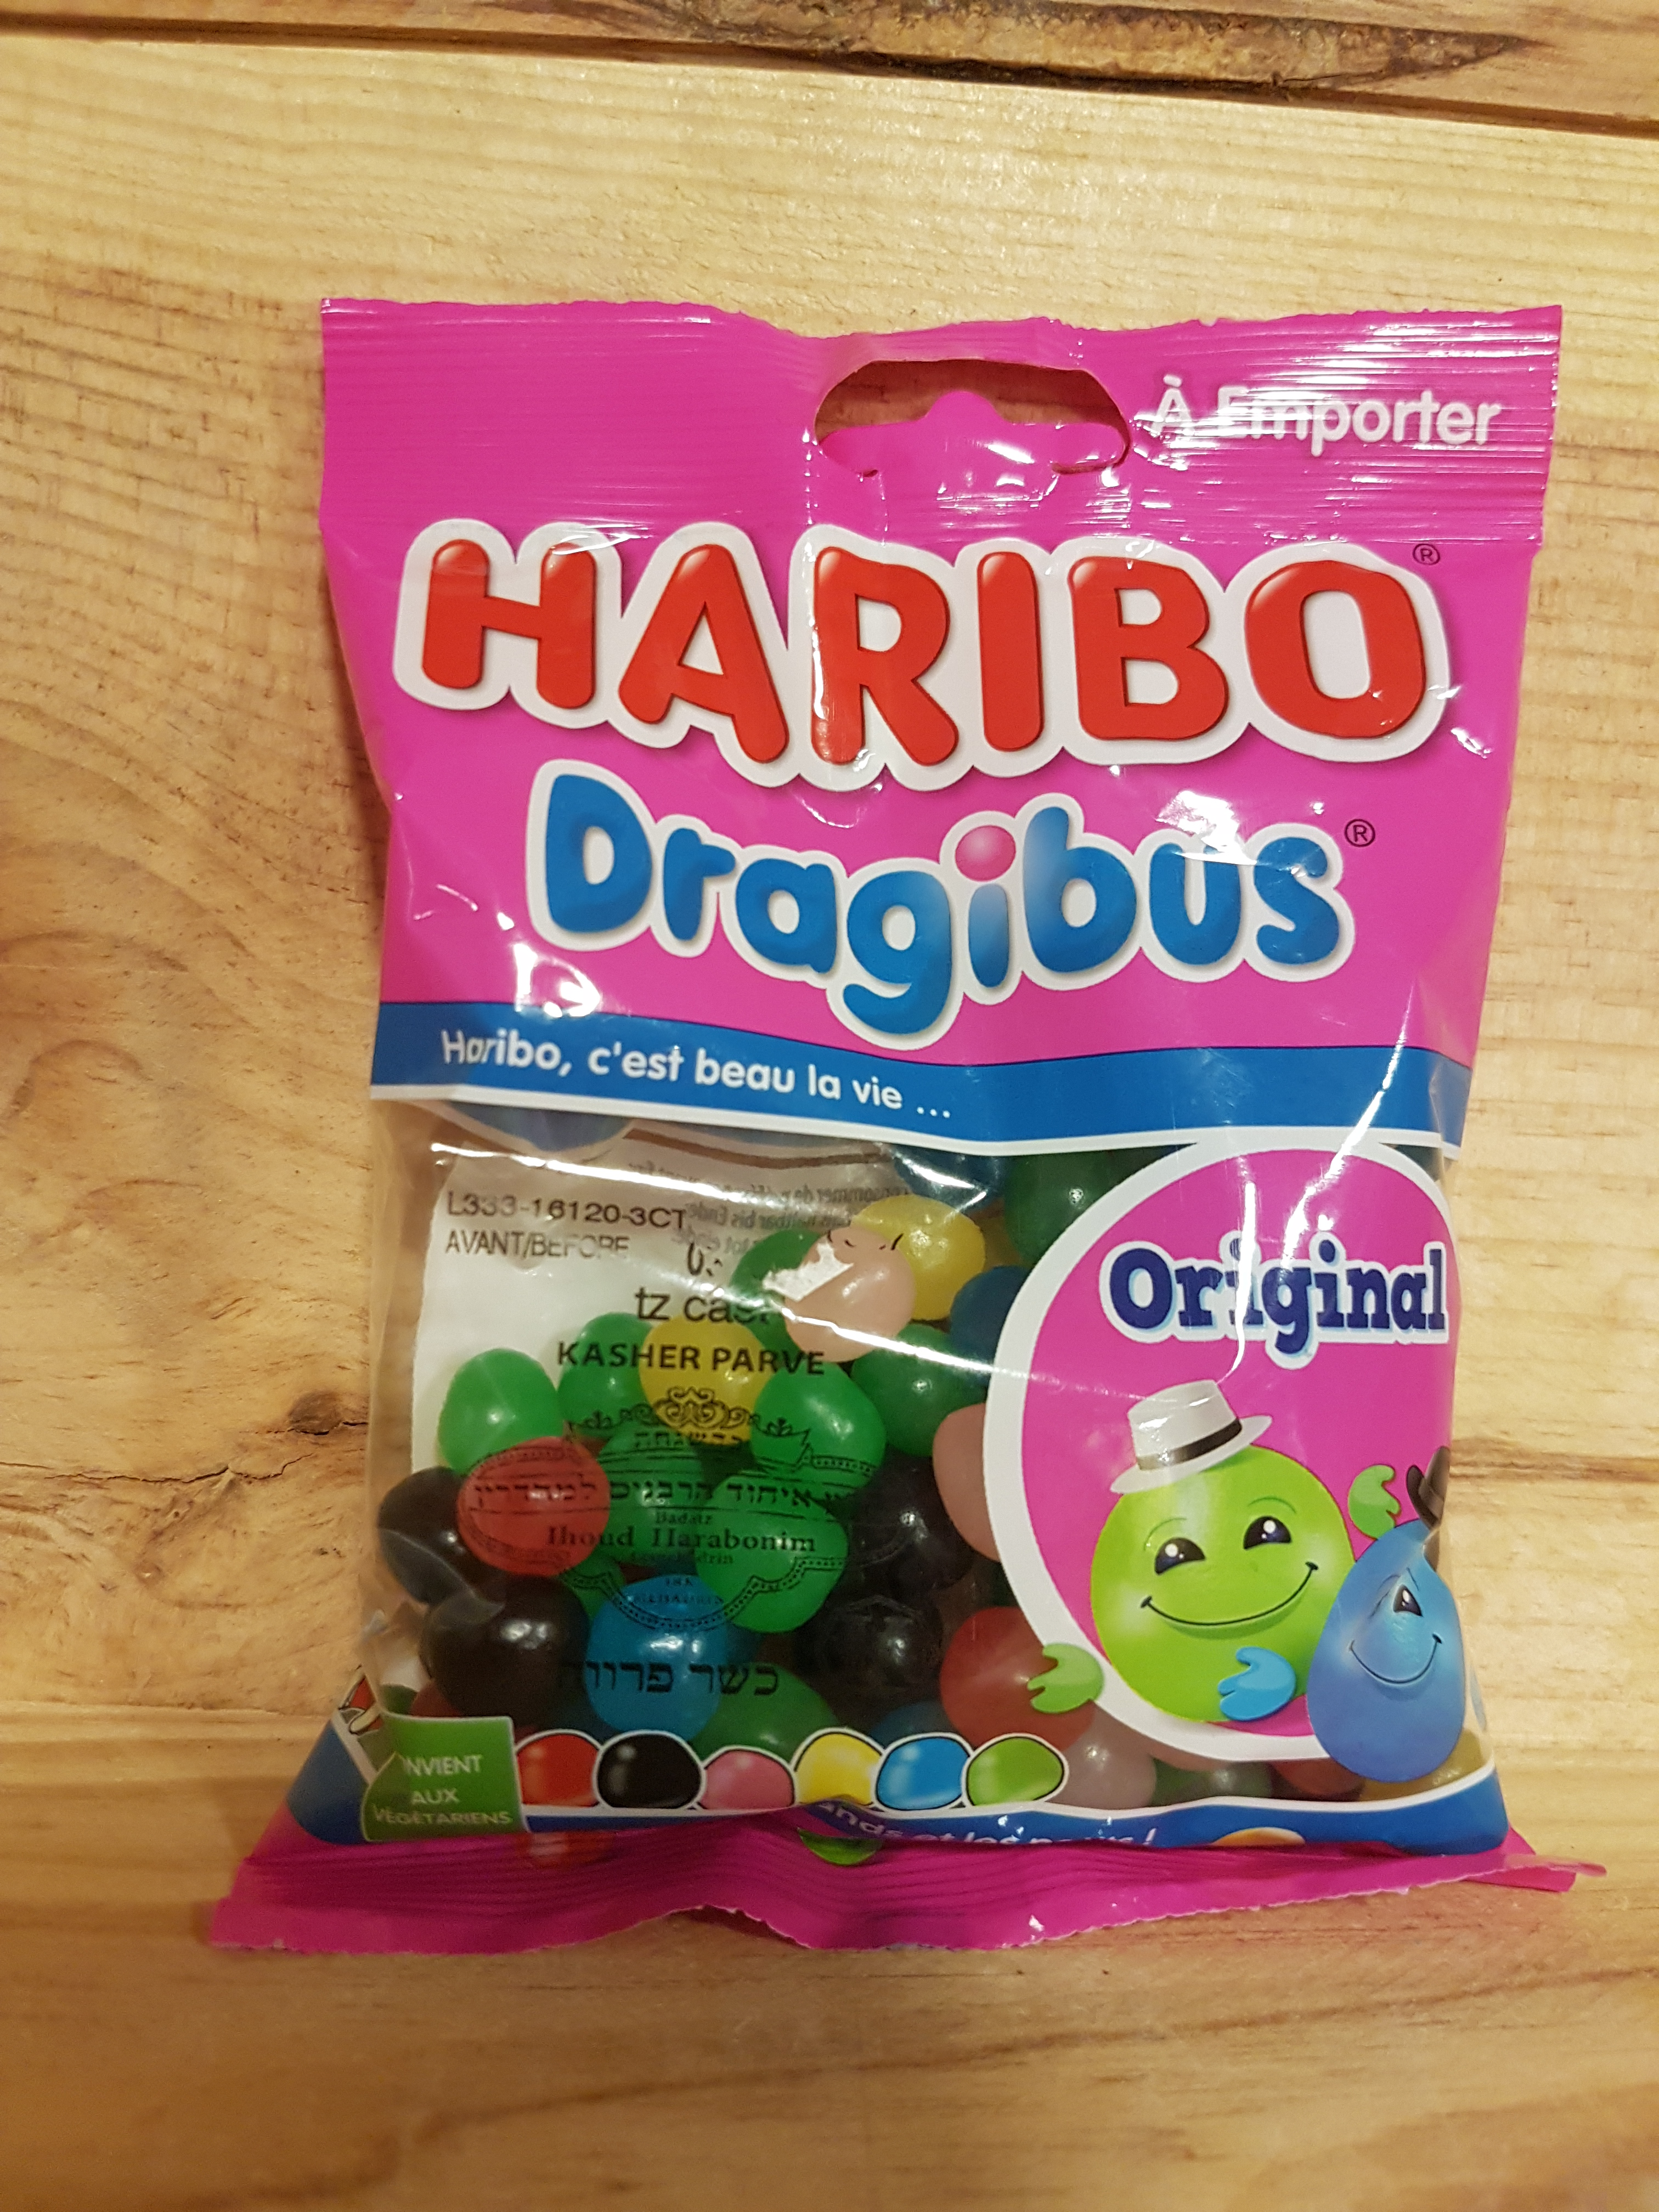 Bonbons | Dragibus Original Haribo